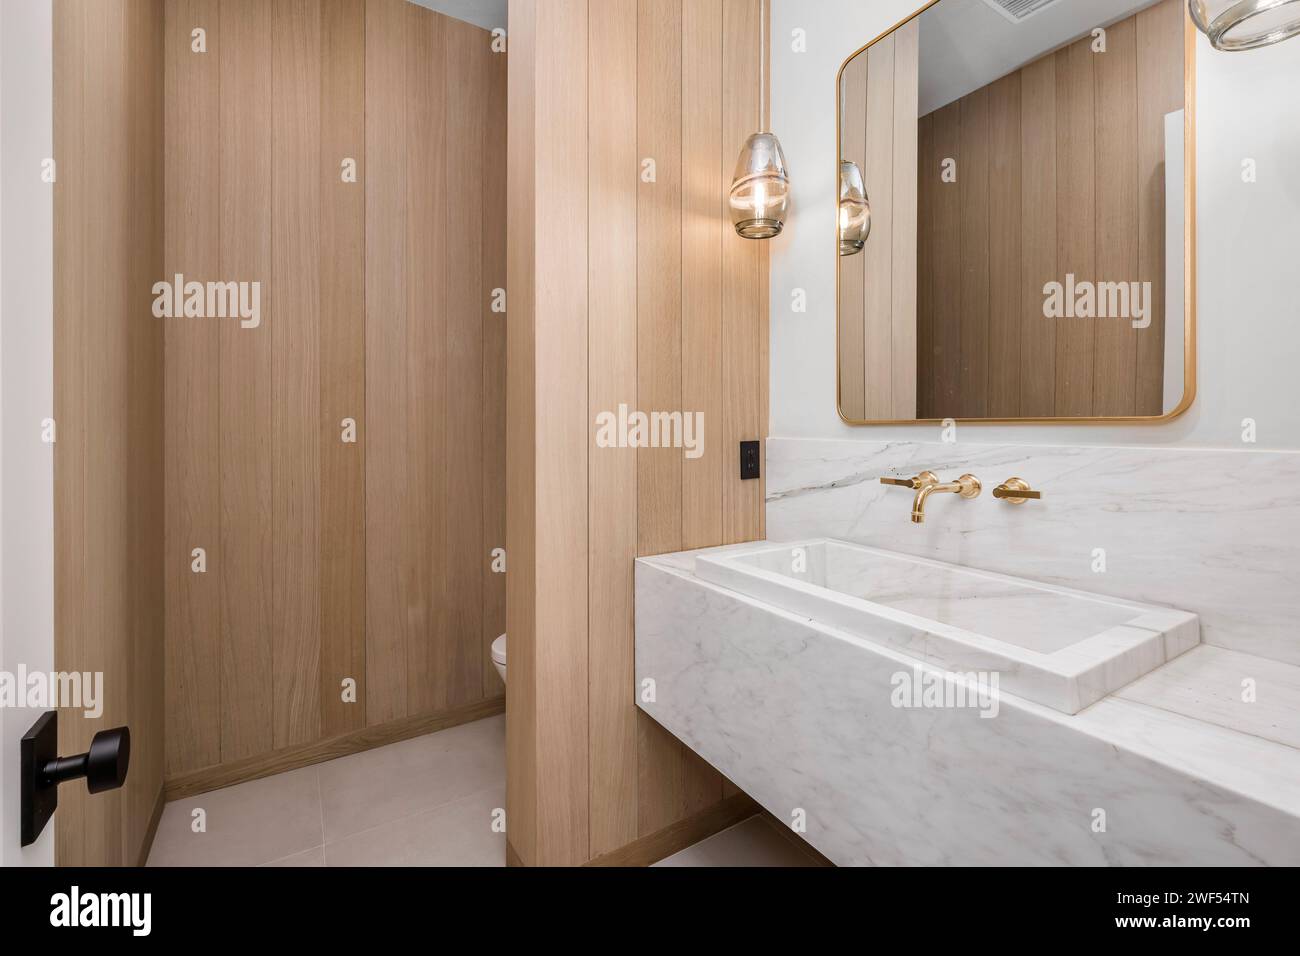 Salle de bains élégante dotée d''une armoire en bois et d''un lavabo en marbre sur une élégante coiffeuse en bois Banque D'Images